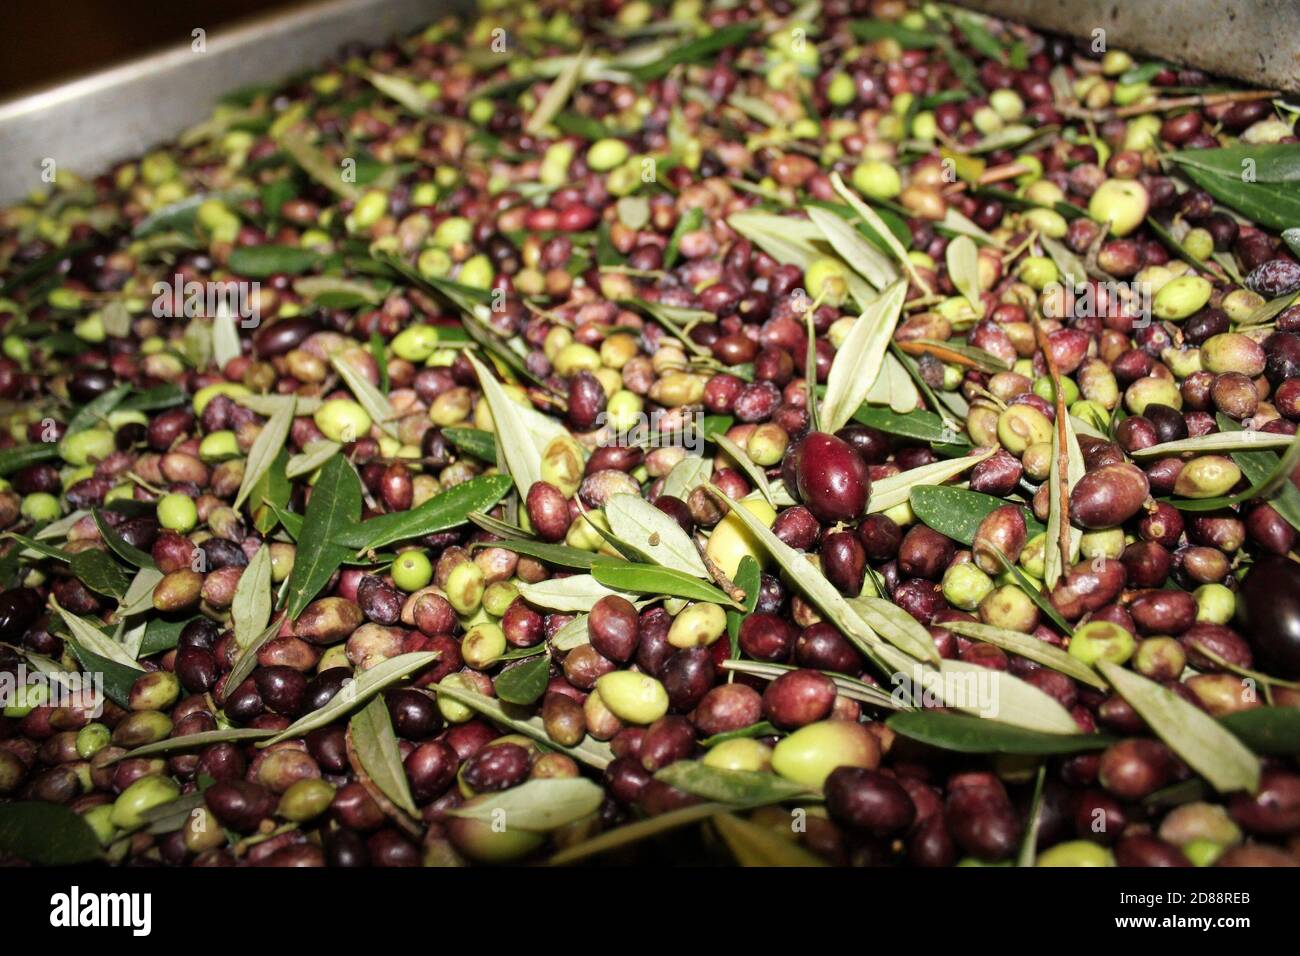 Pulizia delle olive con acqua fresca nel frantoio durante il processo di produzione dell'olio extravergine di oliva ad Attica, in Grecia. Foto Stock